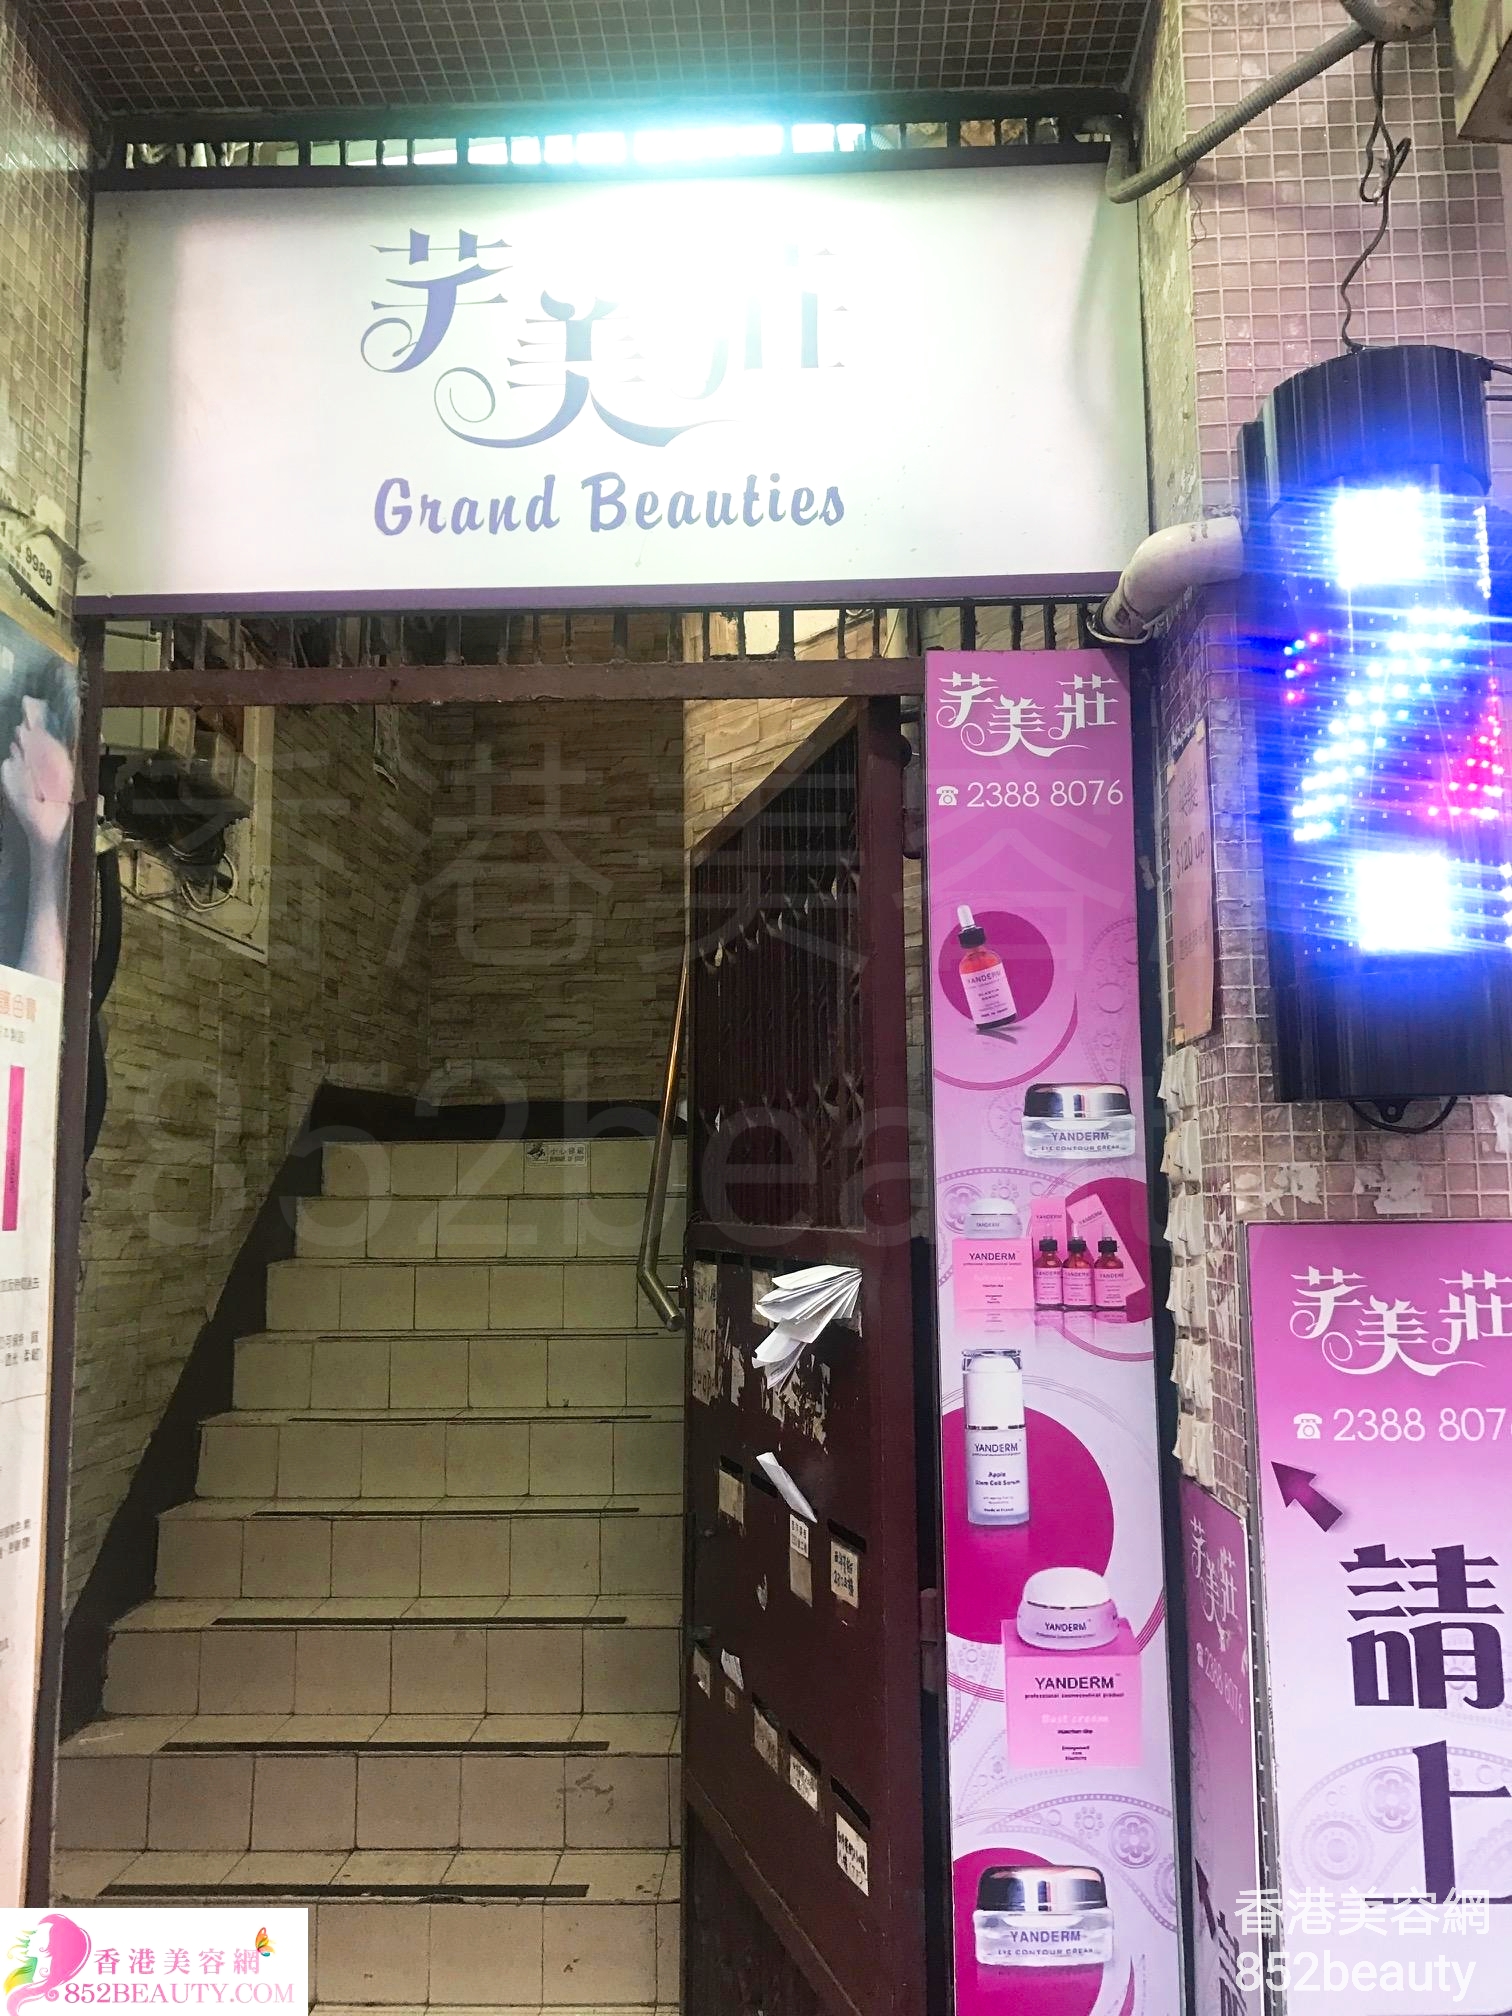 香港美容網 Hong Kong Beauty Salon 美容院 / 美容師: 芊美莊 Grand Beauties